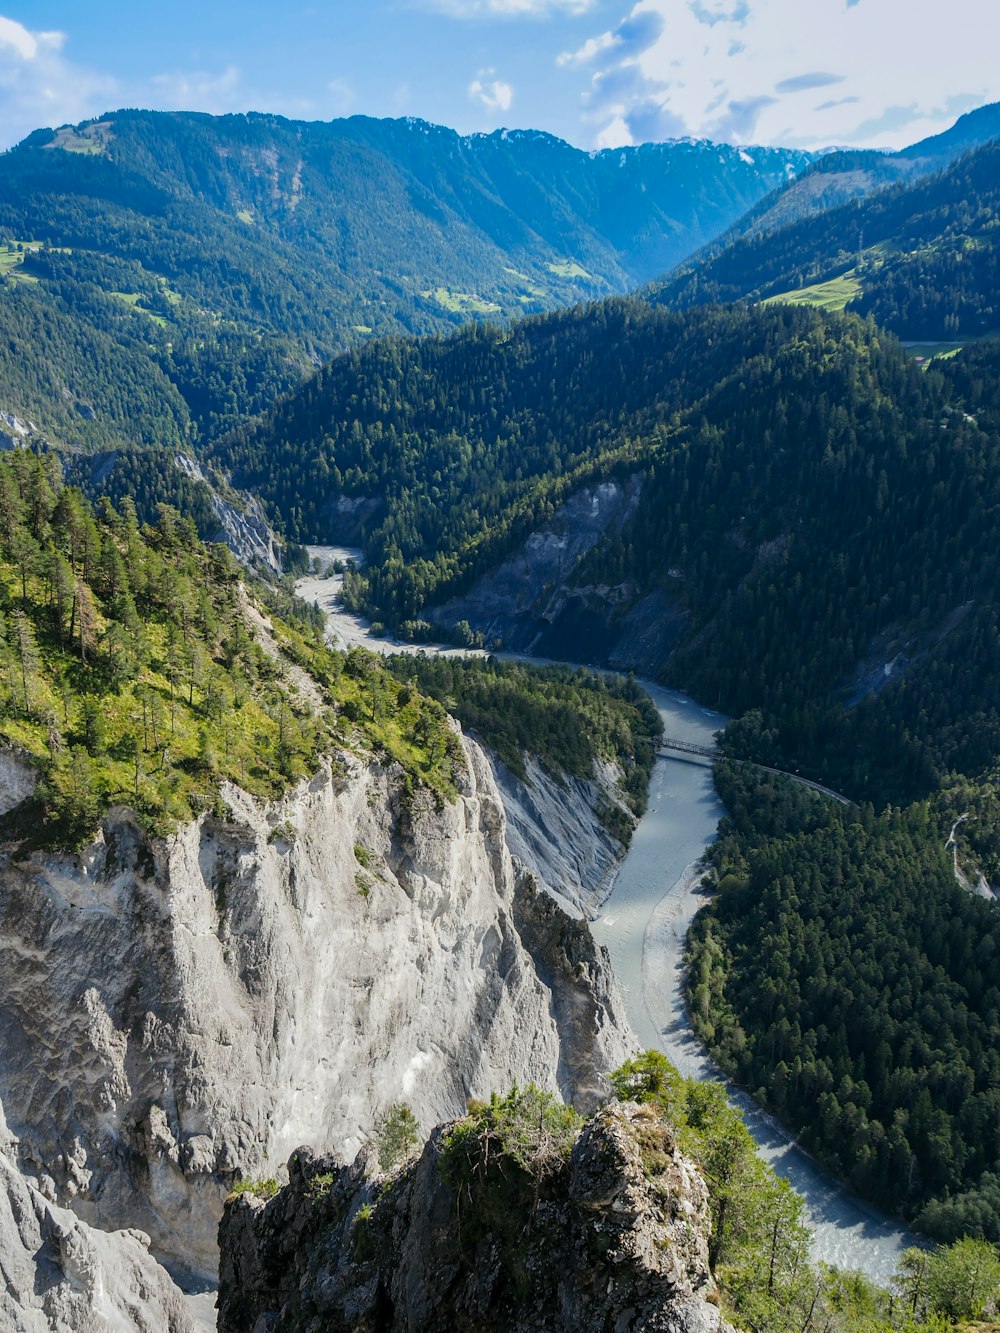 une rivière qui coule dans une vallée entourée de montagnes